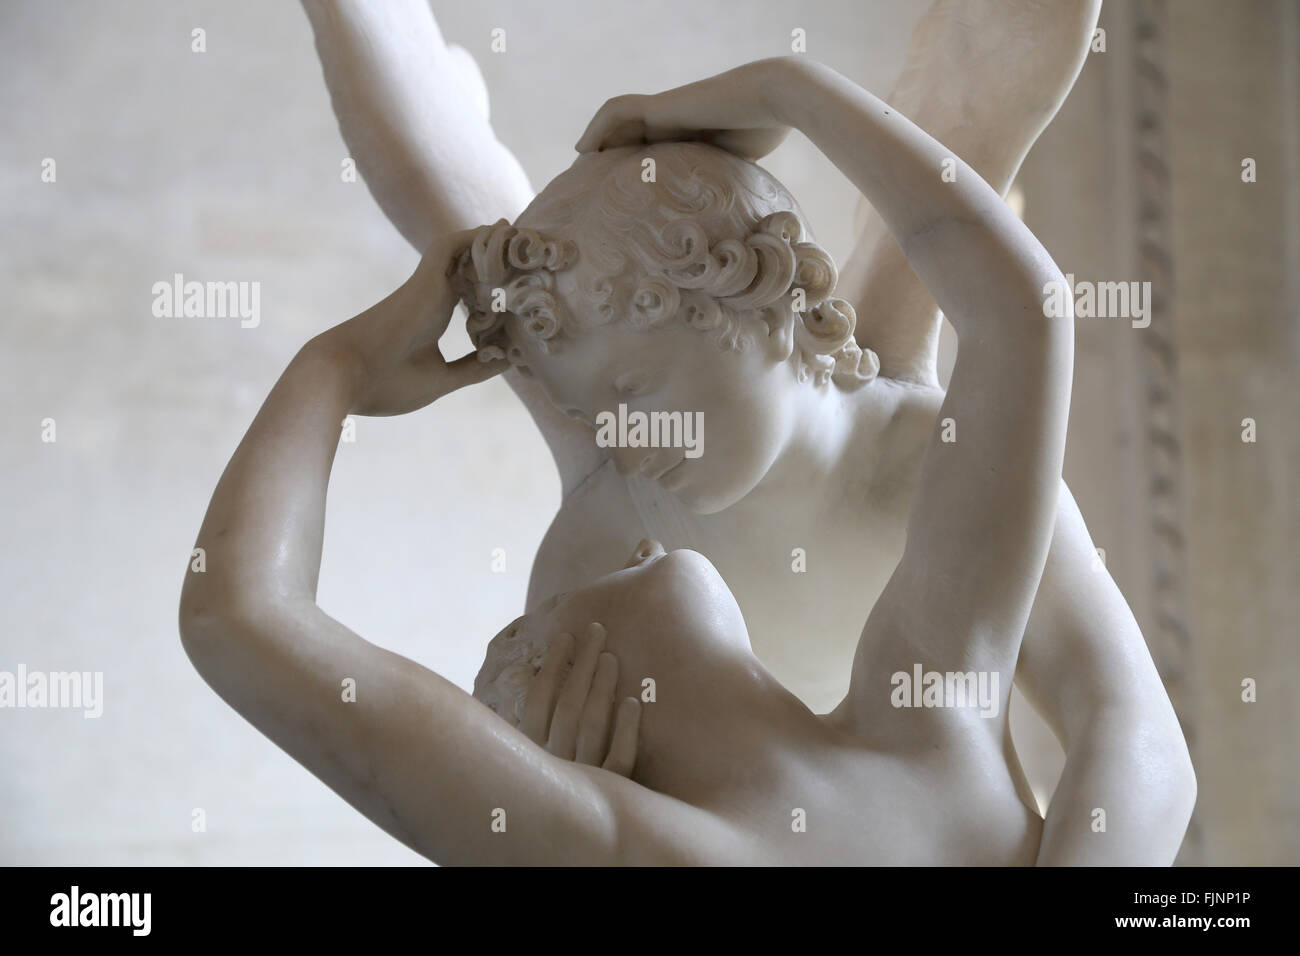 Psiche ravvivato da Cupido bacio. Scultura di italiano scultore neoclassico Antonio Canova (1757-1822). Marmo, 1787. Louvre. Foto Stock